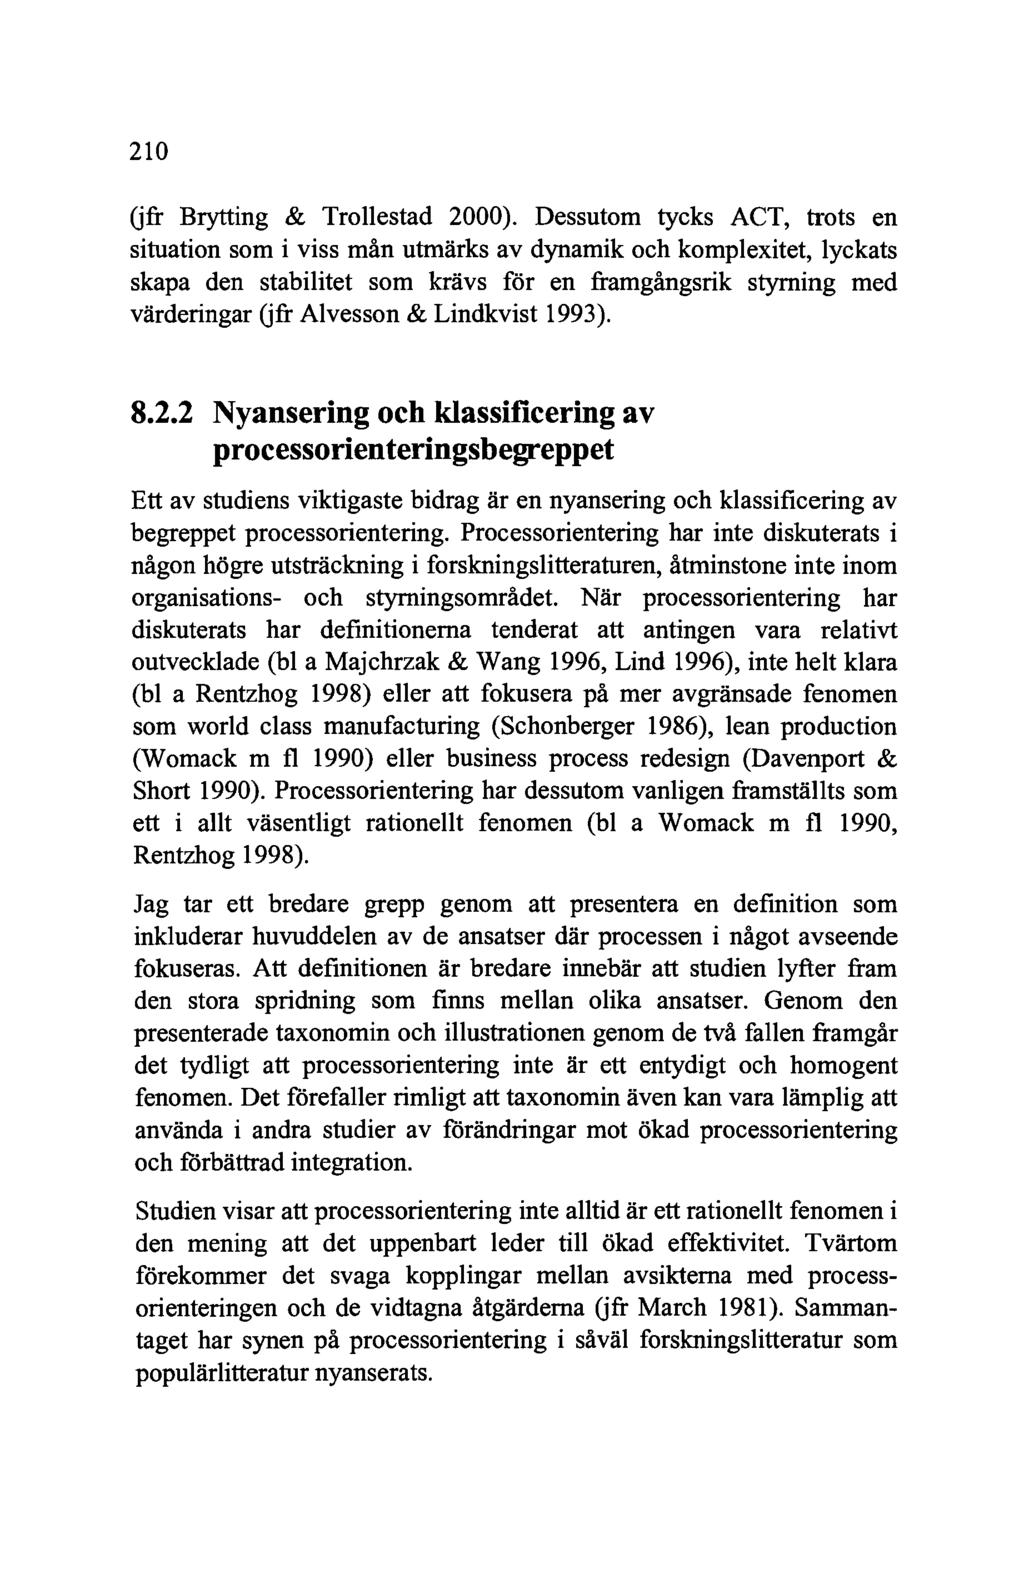 210 (jfr Brytting & Trollestad 2000).